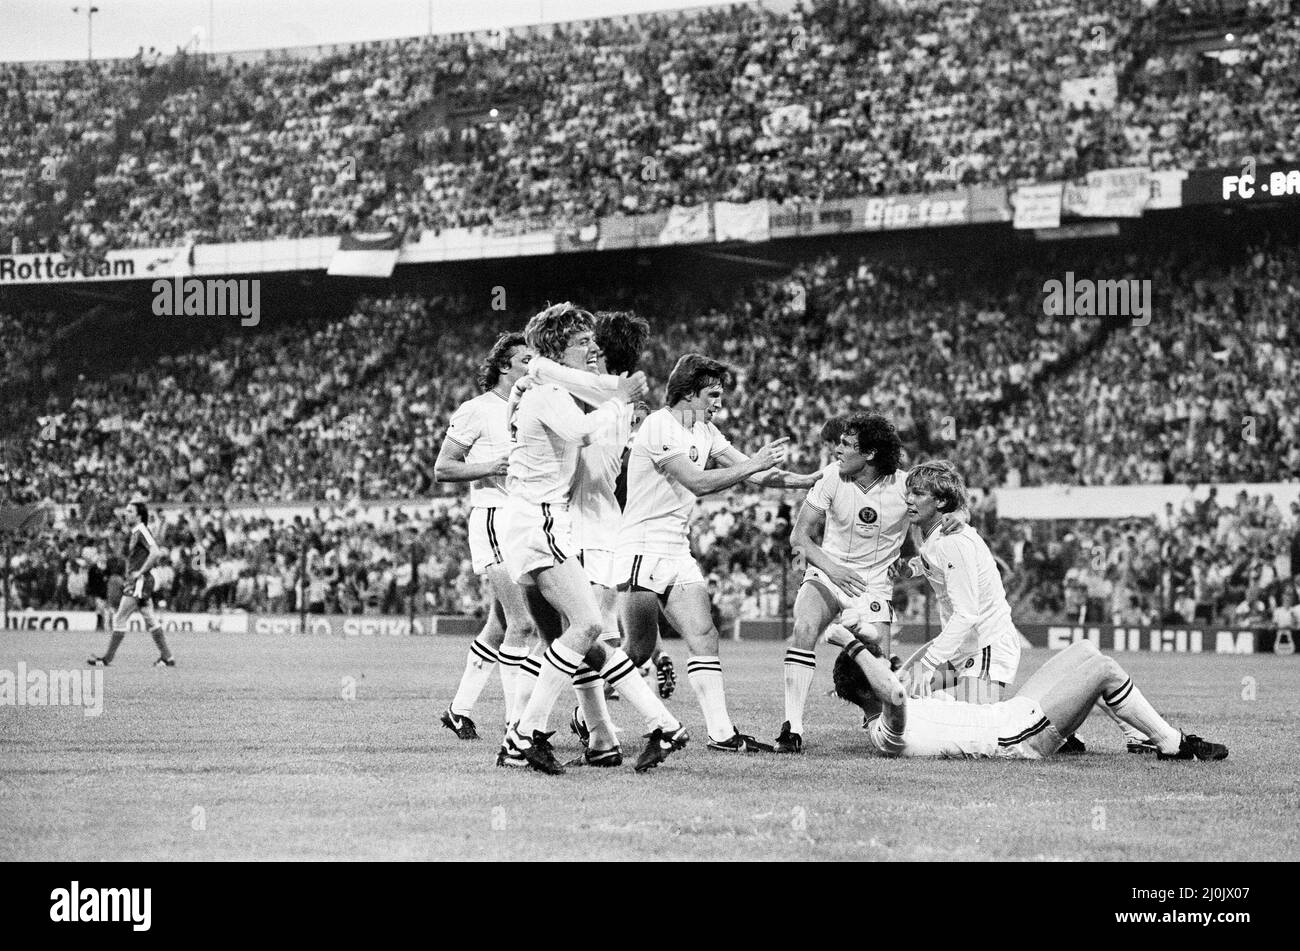 La finale de la coupe d'Europe 1982 a été jouée le 26 mai 1982. Aston Villa, championne d'anglais, a battu les vainqueurs de la ligue ouest-allemande Bayern Munich 1-0 à de Kuip à Rotterdam, pays-Bas pour remporter la coupe d'Europe pour la première fois et jusqu'à présent seulement.26th mai 1982 (photo) les joueurs de Villa célèbrent le but de Peter Wite. Banque D'Images